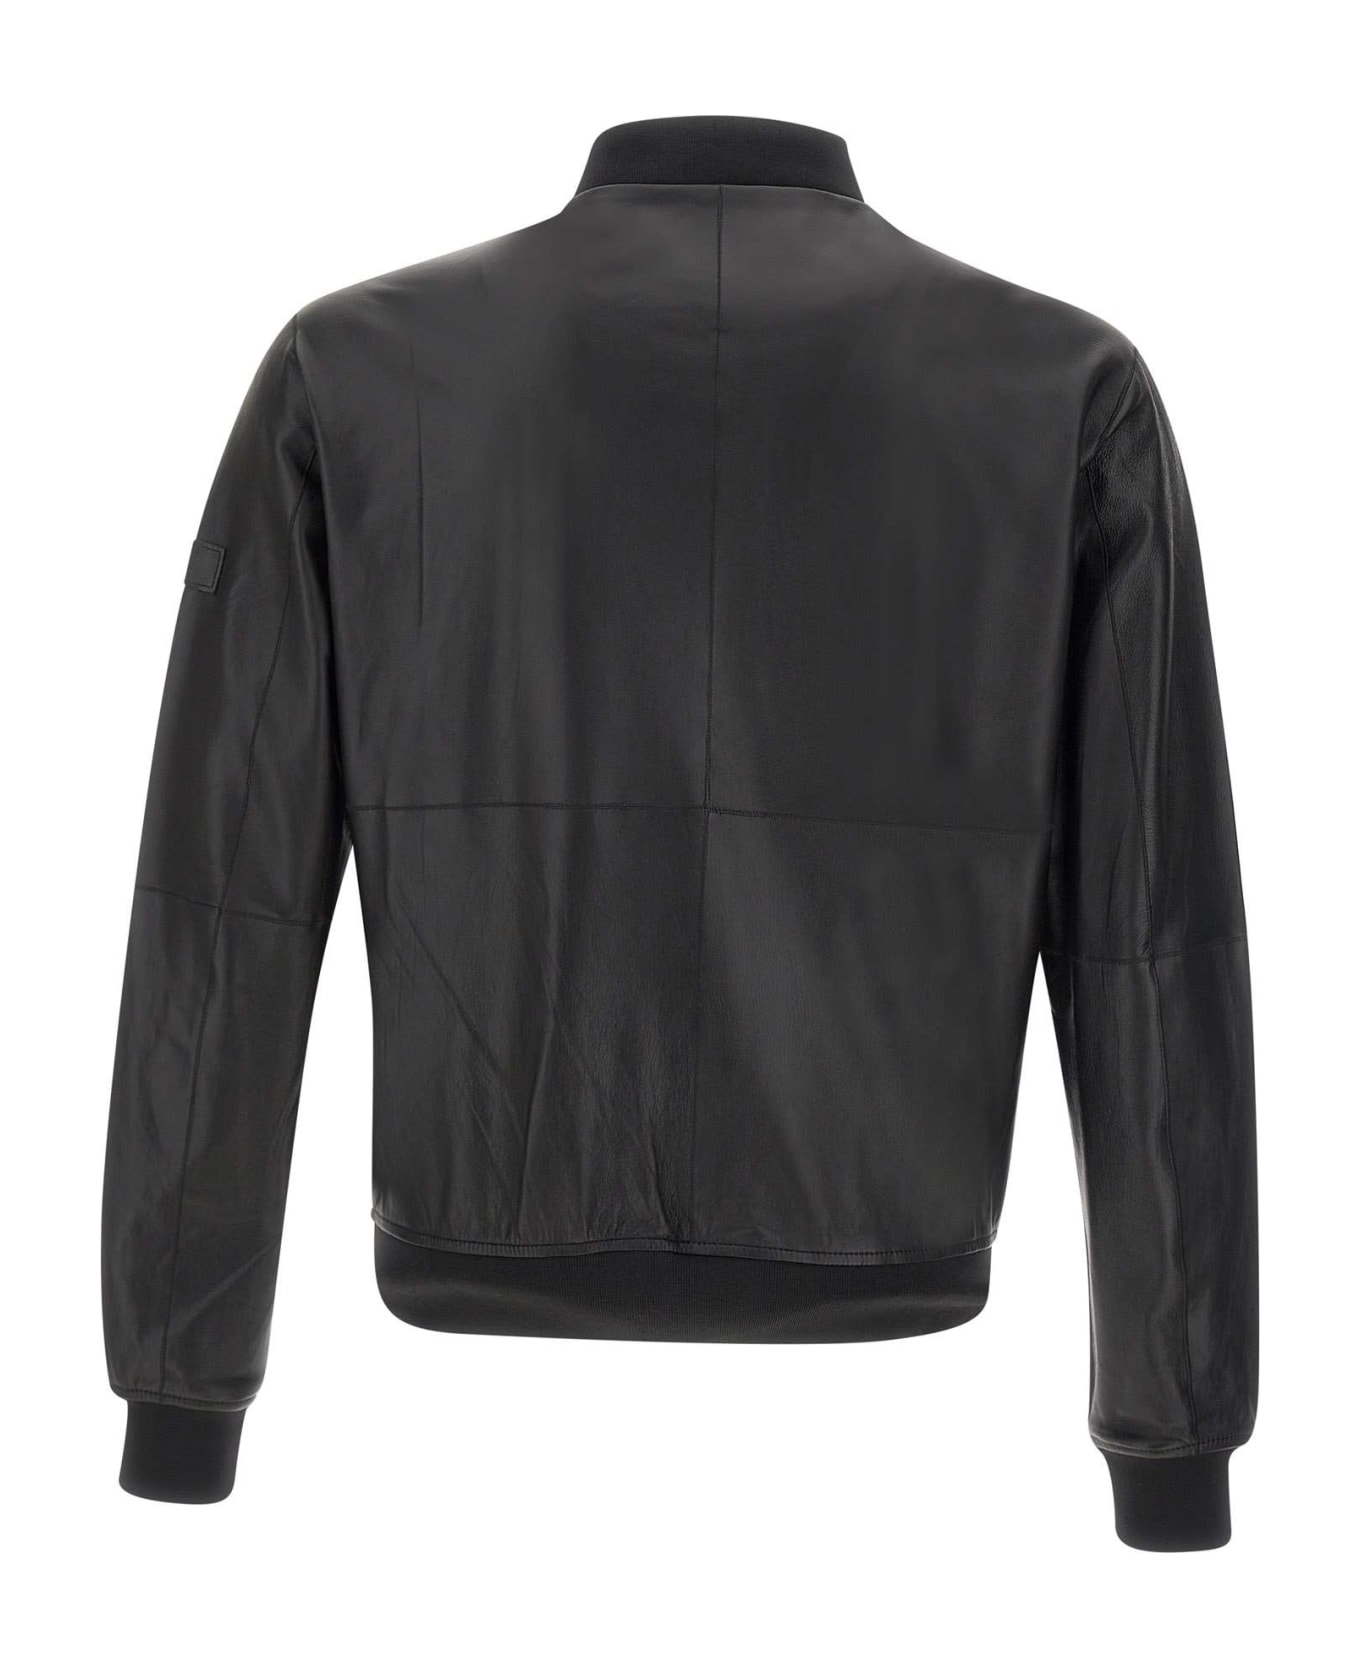 Peuterey 'fans Leather Acc' Jacket - Black